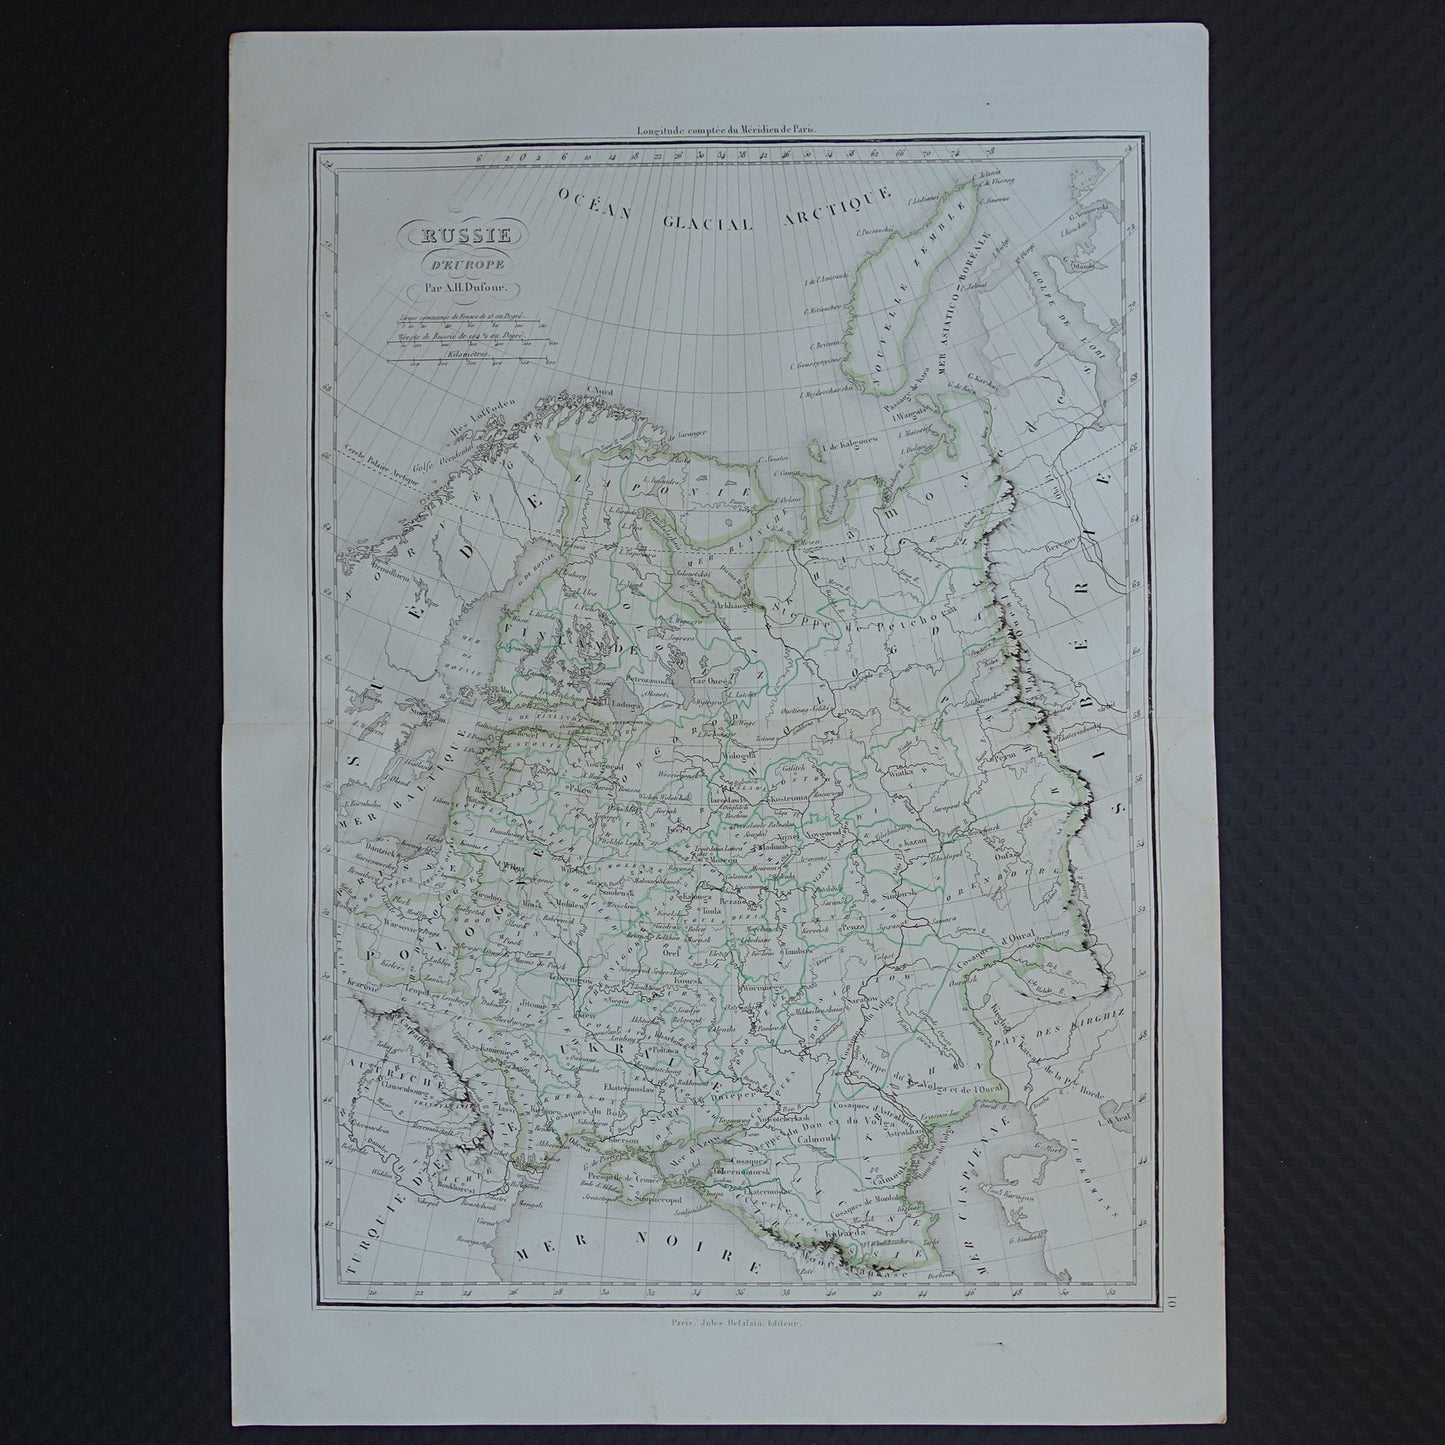 RUSLAND Oude kaart van Europees Rusland uit 1849 originele 170+ jaar oude handgekleurde Franse landkaart Russische Rijk in Europa